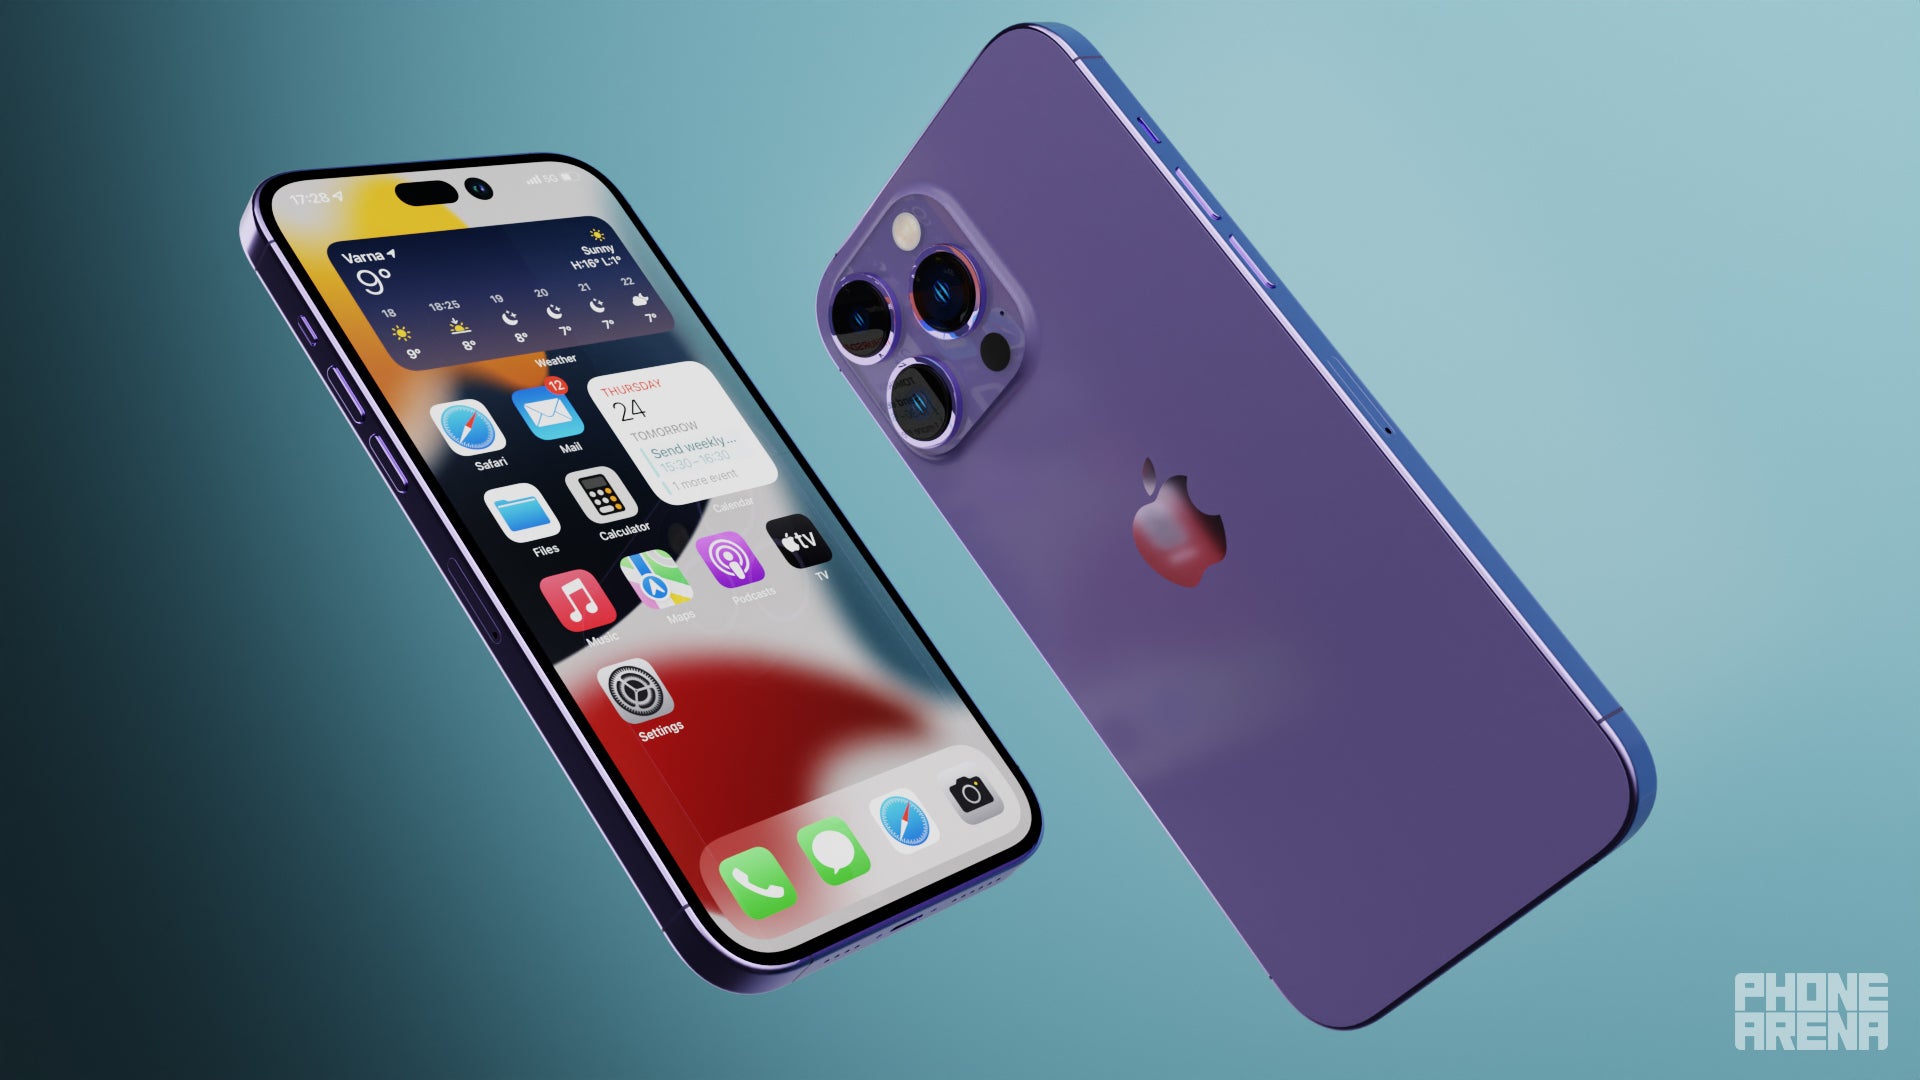 Sarebbe bello anche il viola.  - iPhone 14 Pro Max con una batteria da 5000 mAh sarebbe la fine del dibattito sulla batteria Android vs Apple